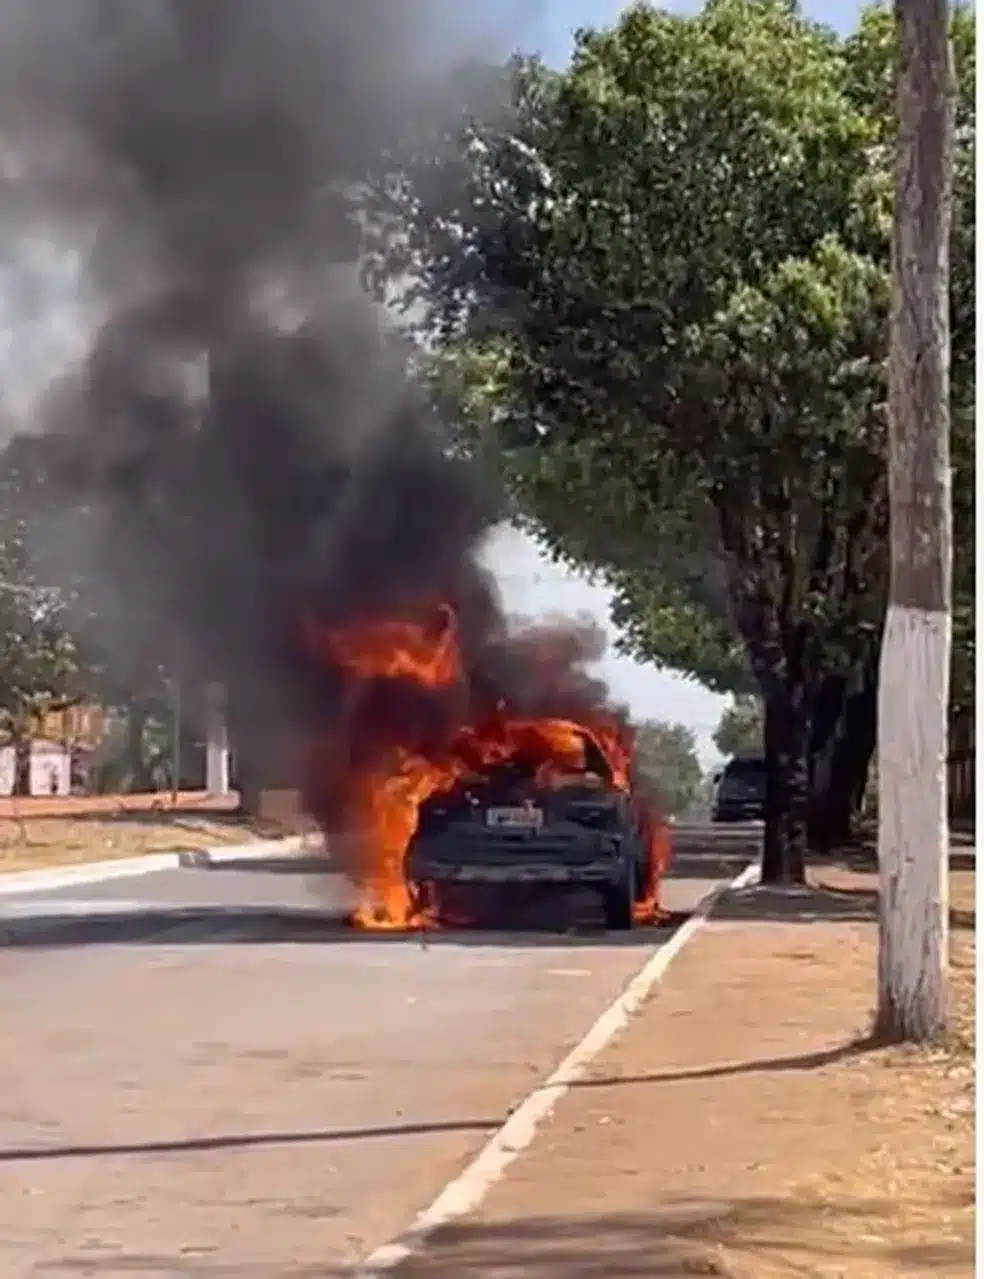 Carro foi destruído pelo fogo — Foto: Reprodução